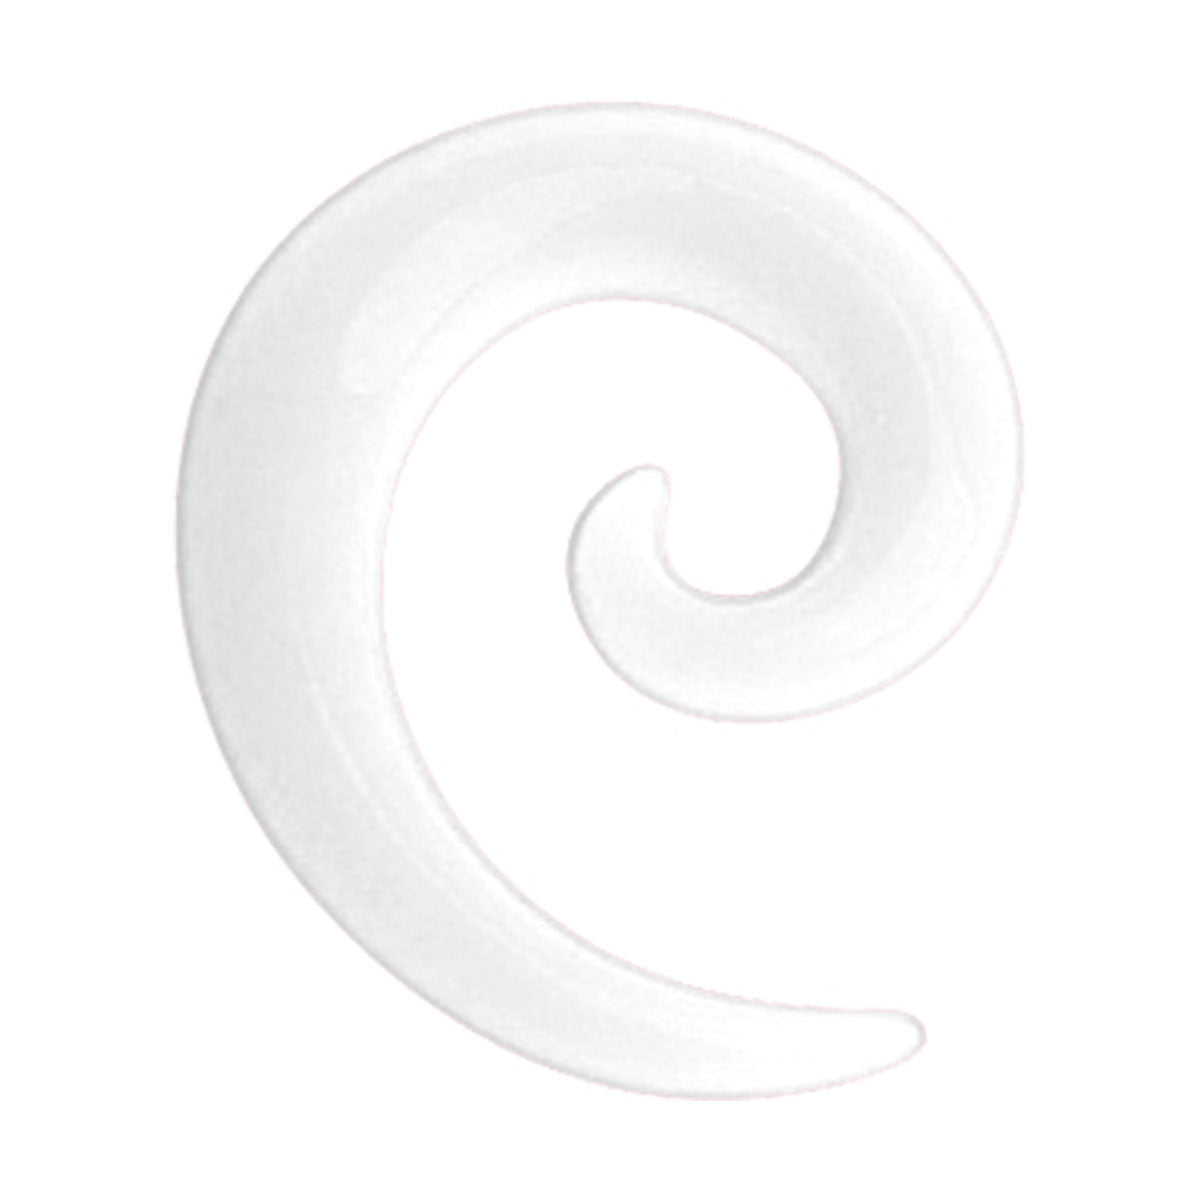 Valkoinen spiraali venytyskoru 4mm 170800212704 | Ninja.fi